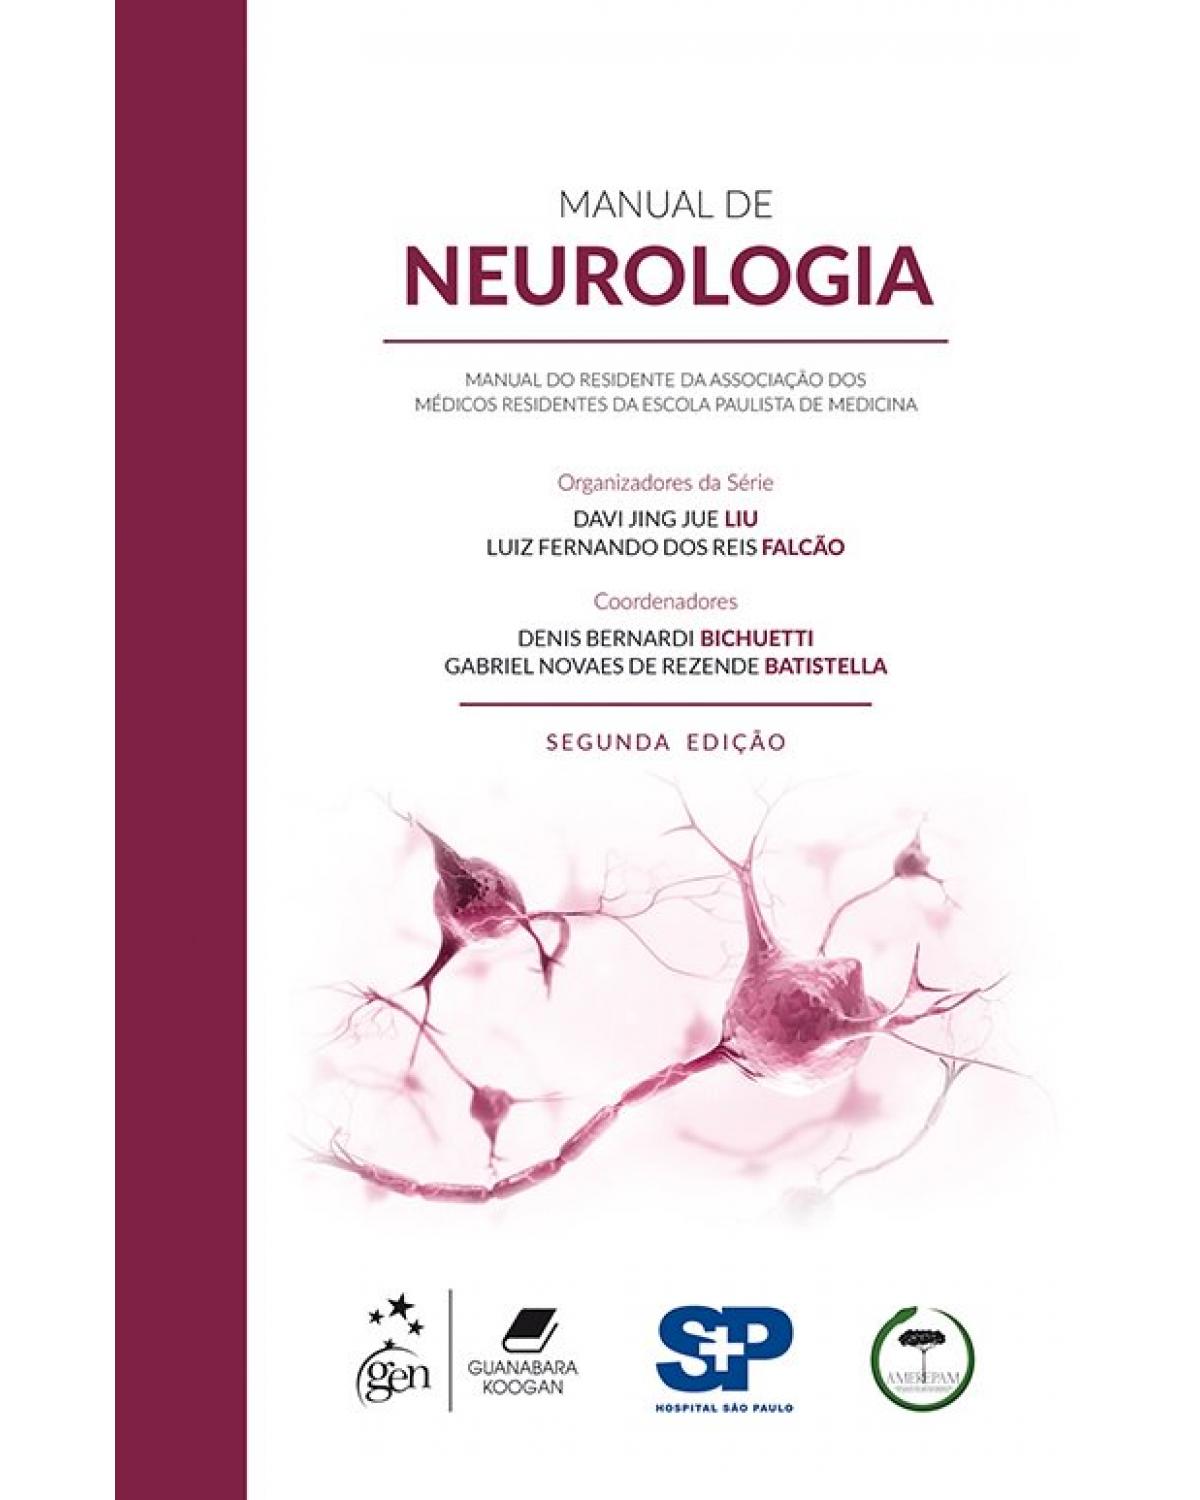 Manual de neurologia - manual do residente da Associação dos Médicos Residentes da Escola Paulista de Medicina - 2ª Edição | 2018